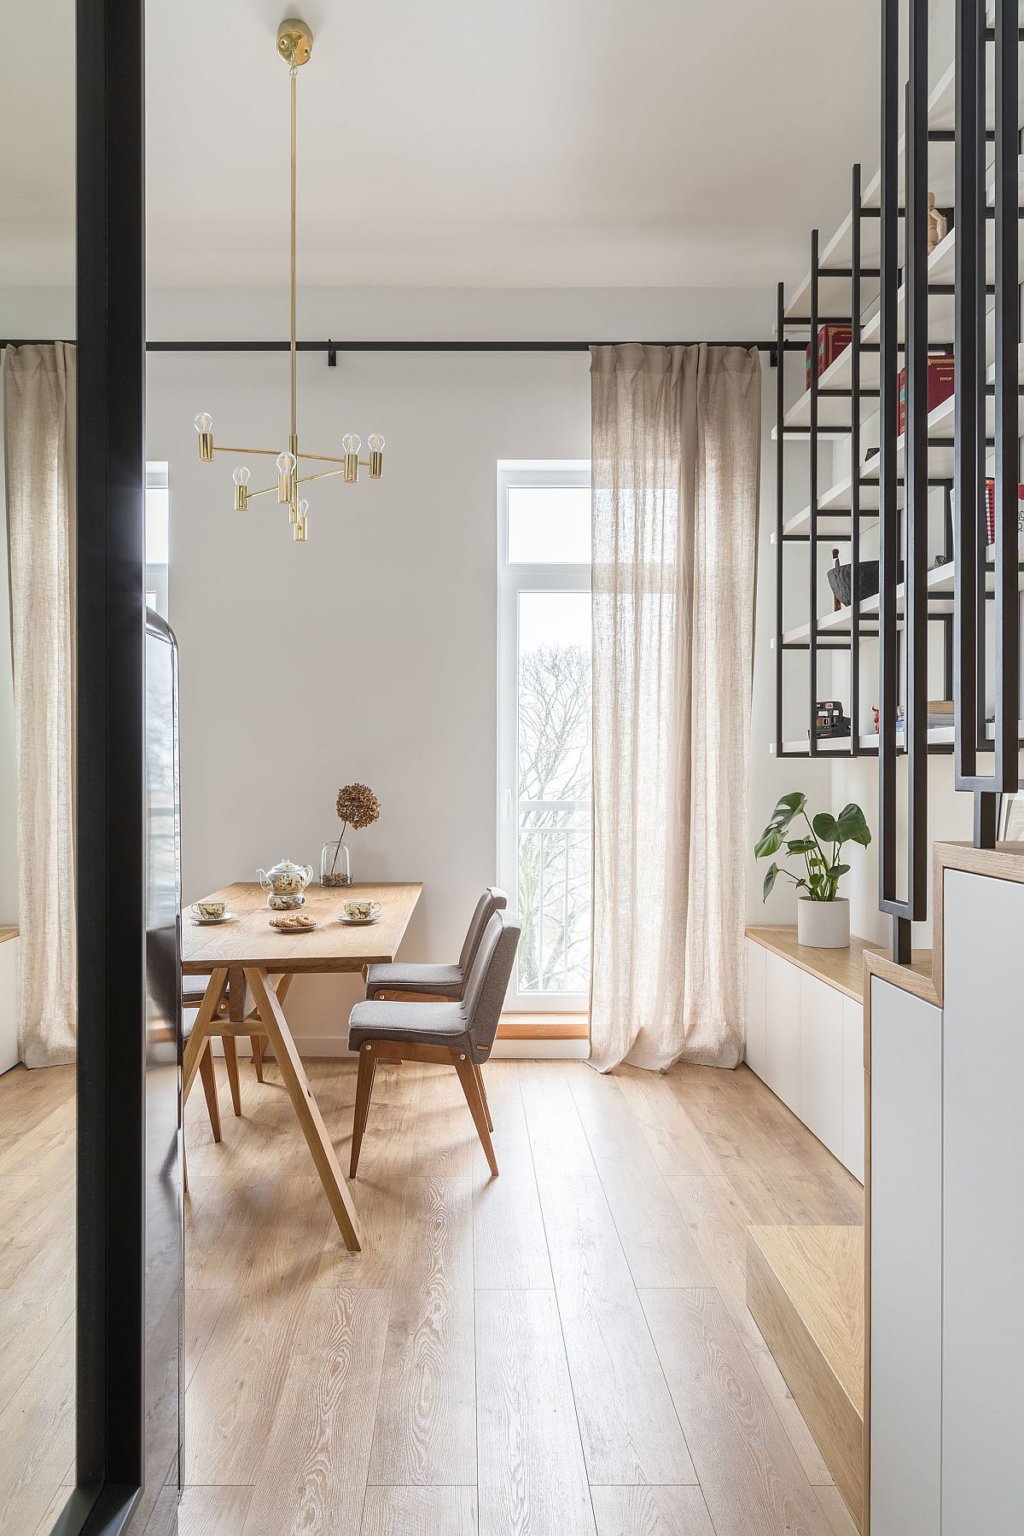 Những bức tường trắng cùng với sàn gỗ và điểm nhấn bằng kim loại tạo nên không gian sống hiện đại, ấm áp trong căn hộ nhỏ.